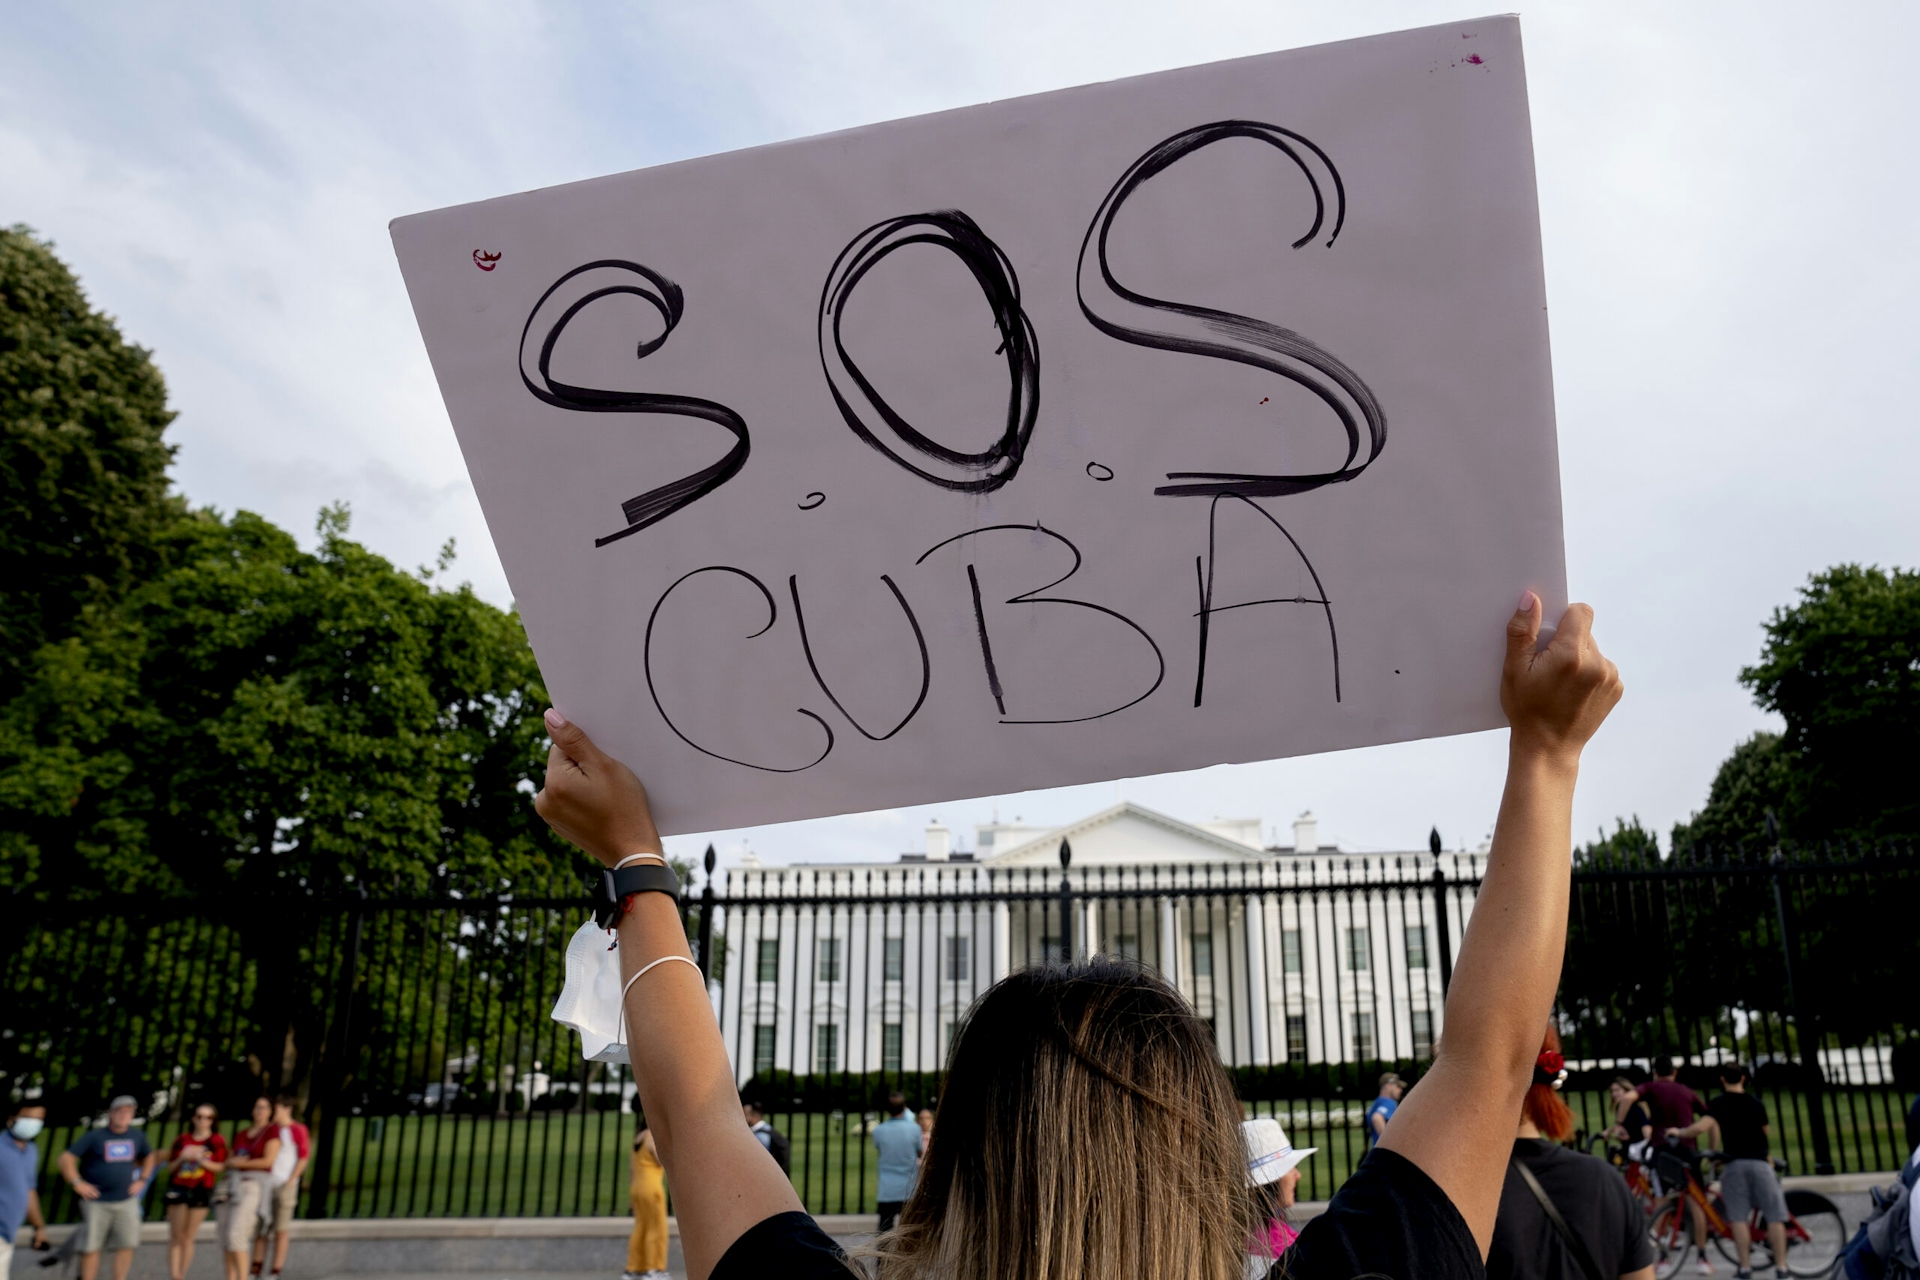 Public opinion on Cuba sanctions